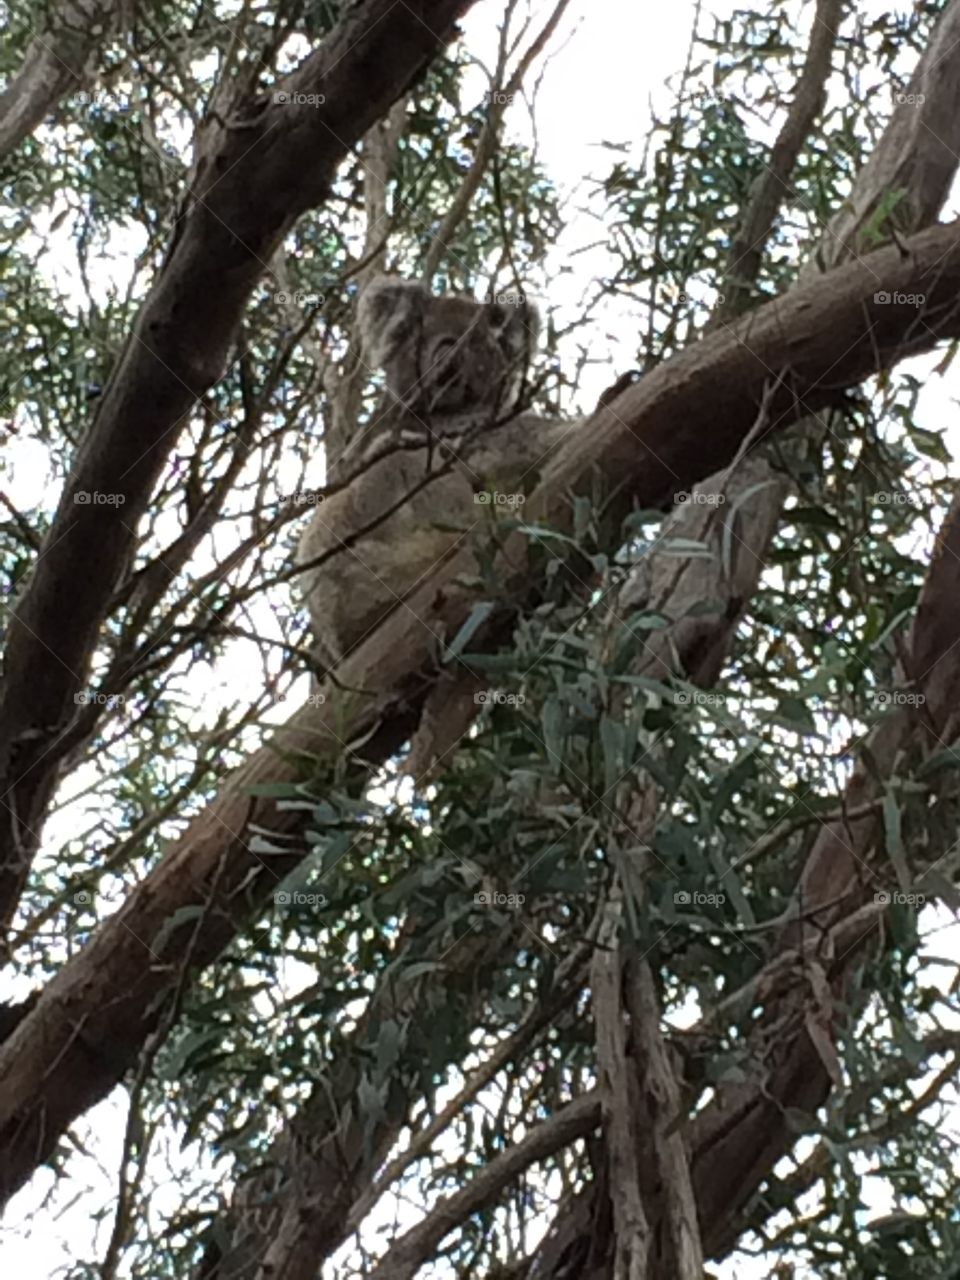 Koala in the forest 